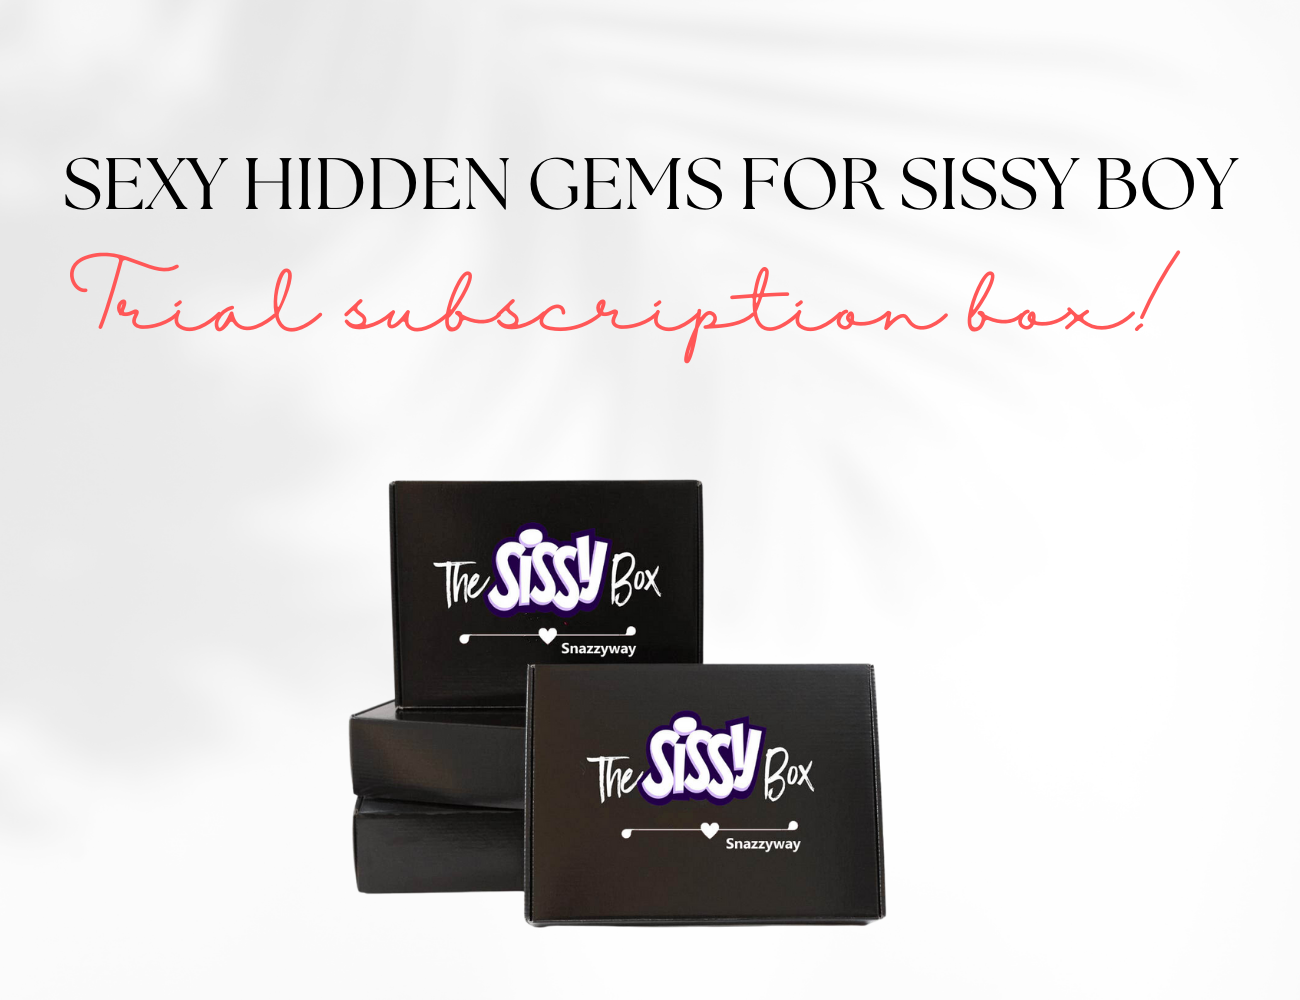 Sexy hidden gems for sissy boy box includes (1)